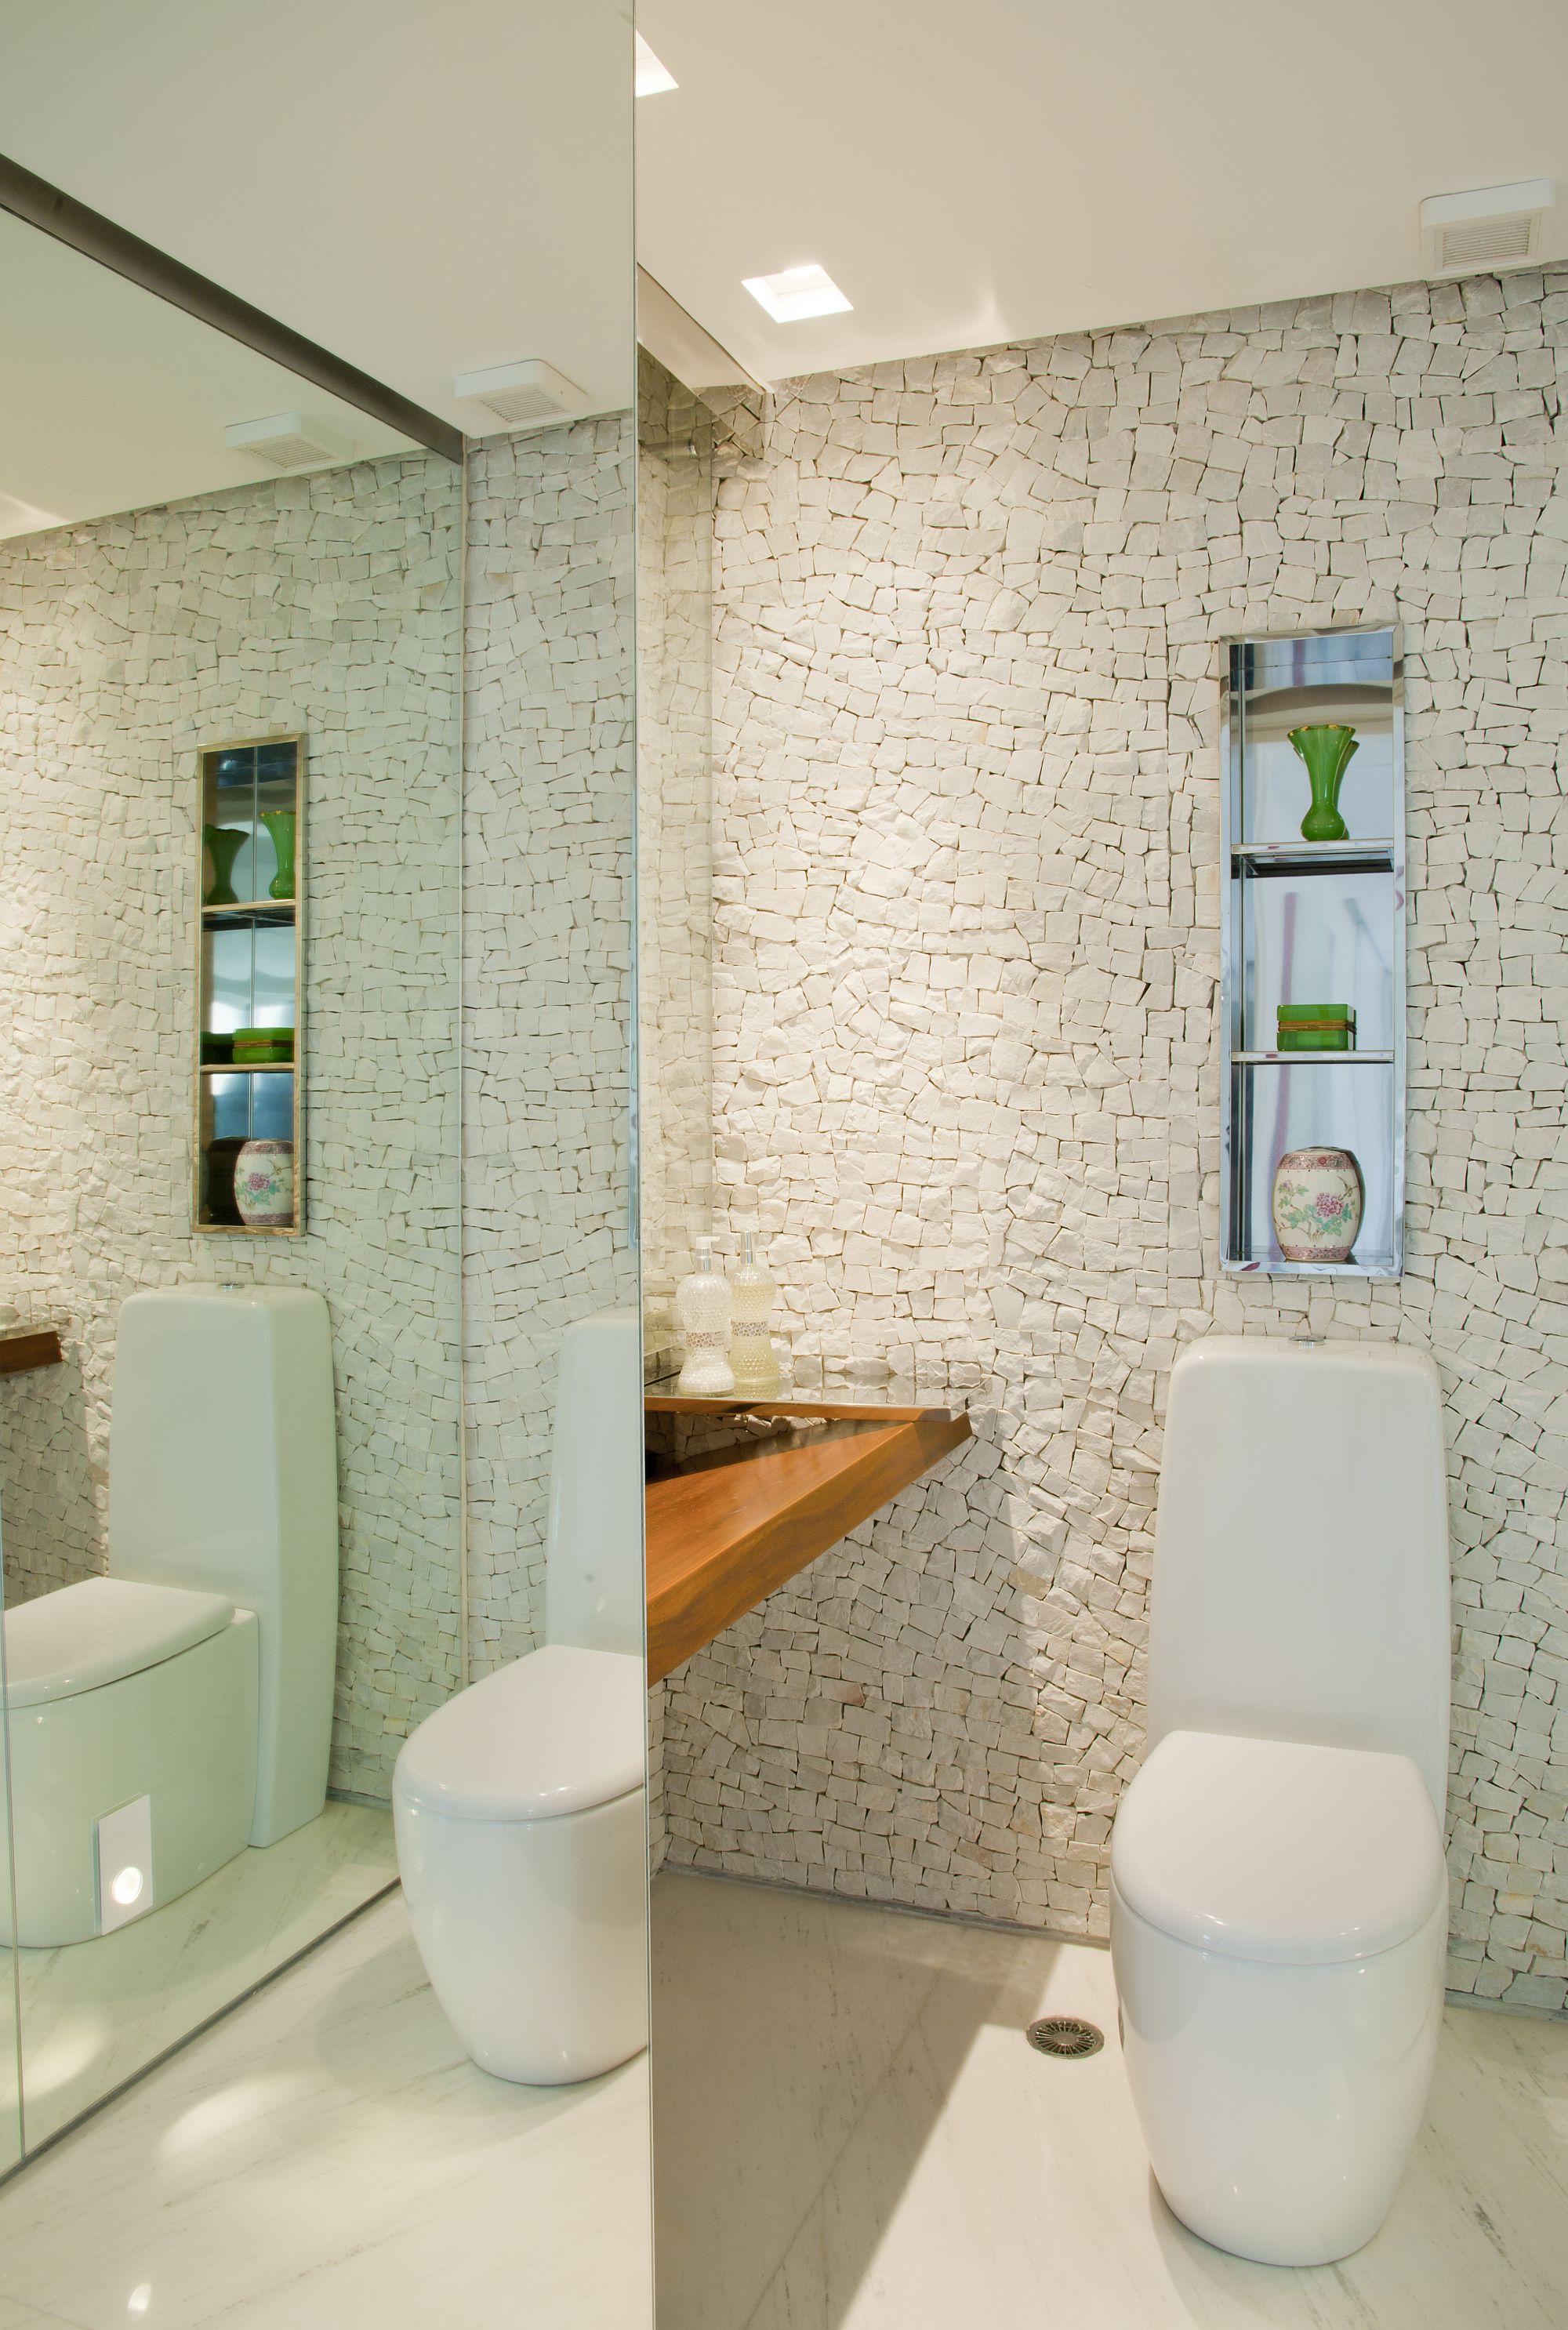 Custom tiled backsplash for the contemporary bathroom in white